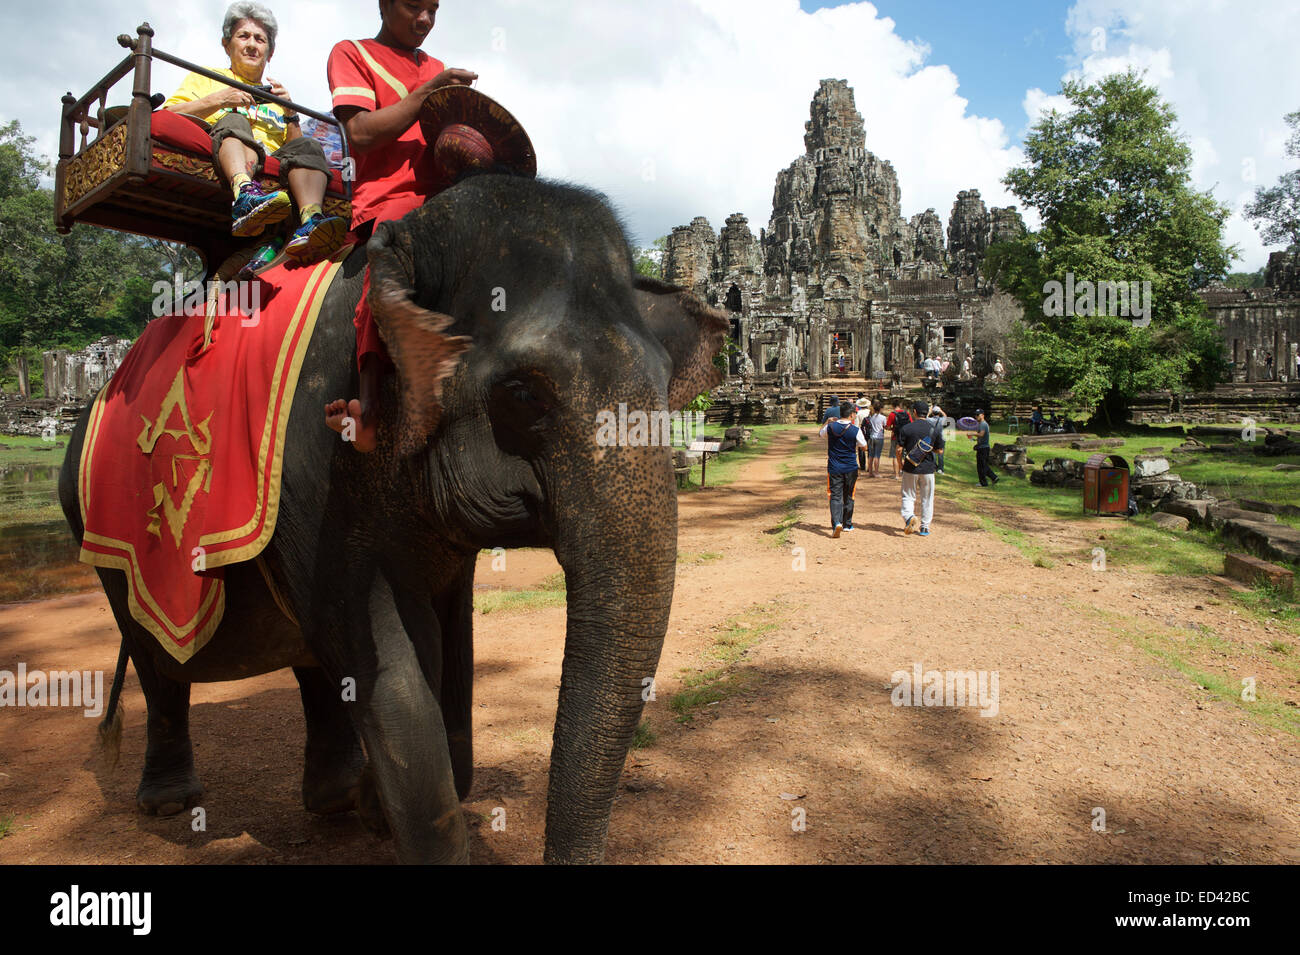 ANGKOR WAT, Kambodscha - 30. Oktober 2014: Touristen ein Elefantenritt auf einem Howdah Stuhl, eine umstrittene Praxis. Stockfoto